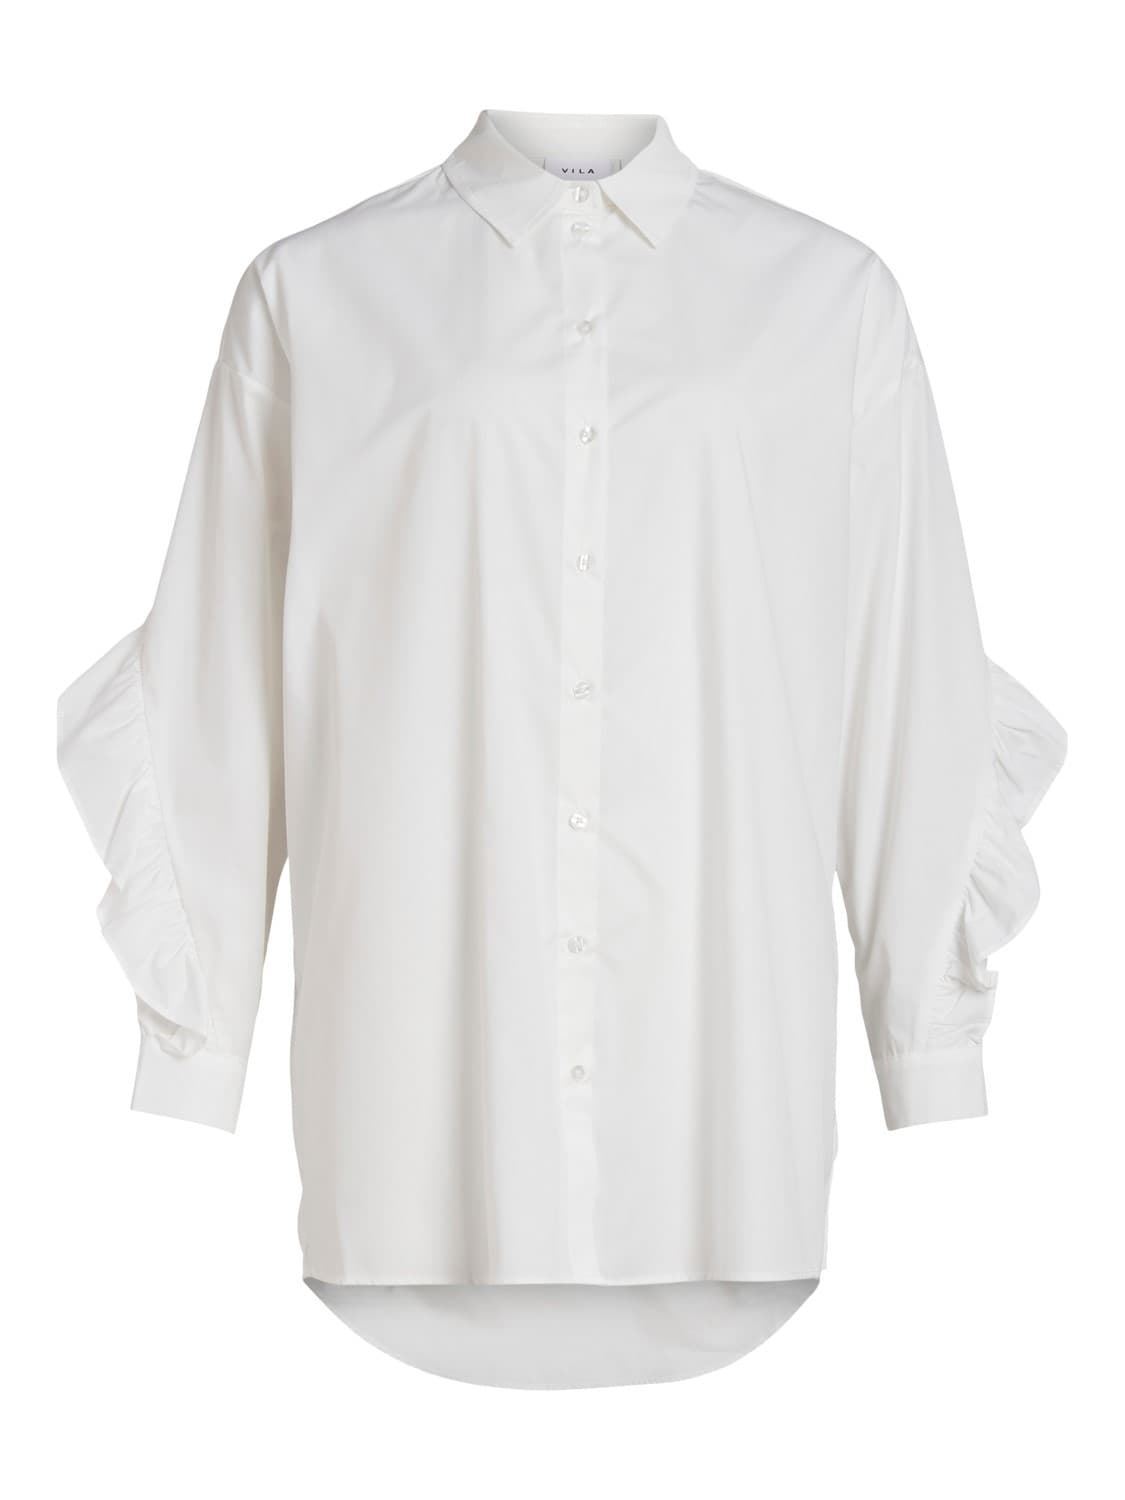 Camisa blanca Vigitzy - Imagen 2